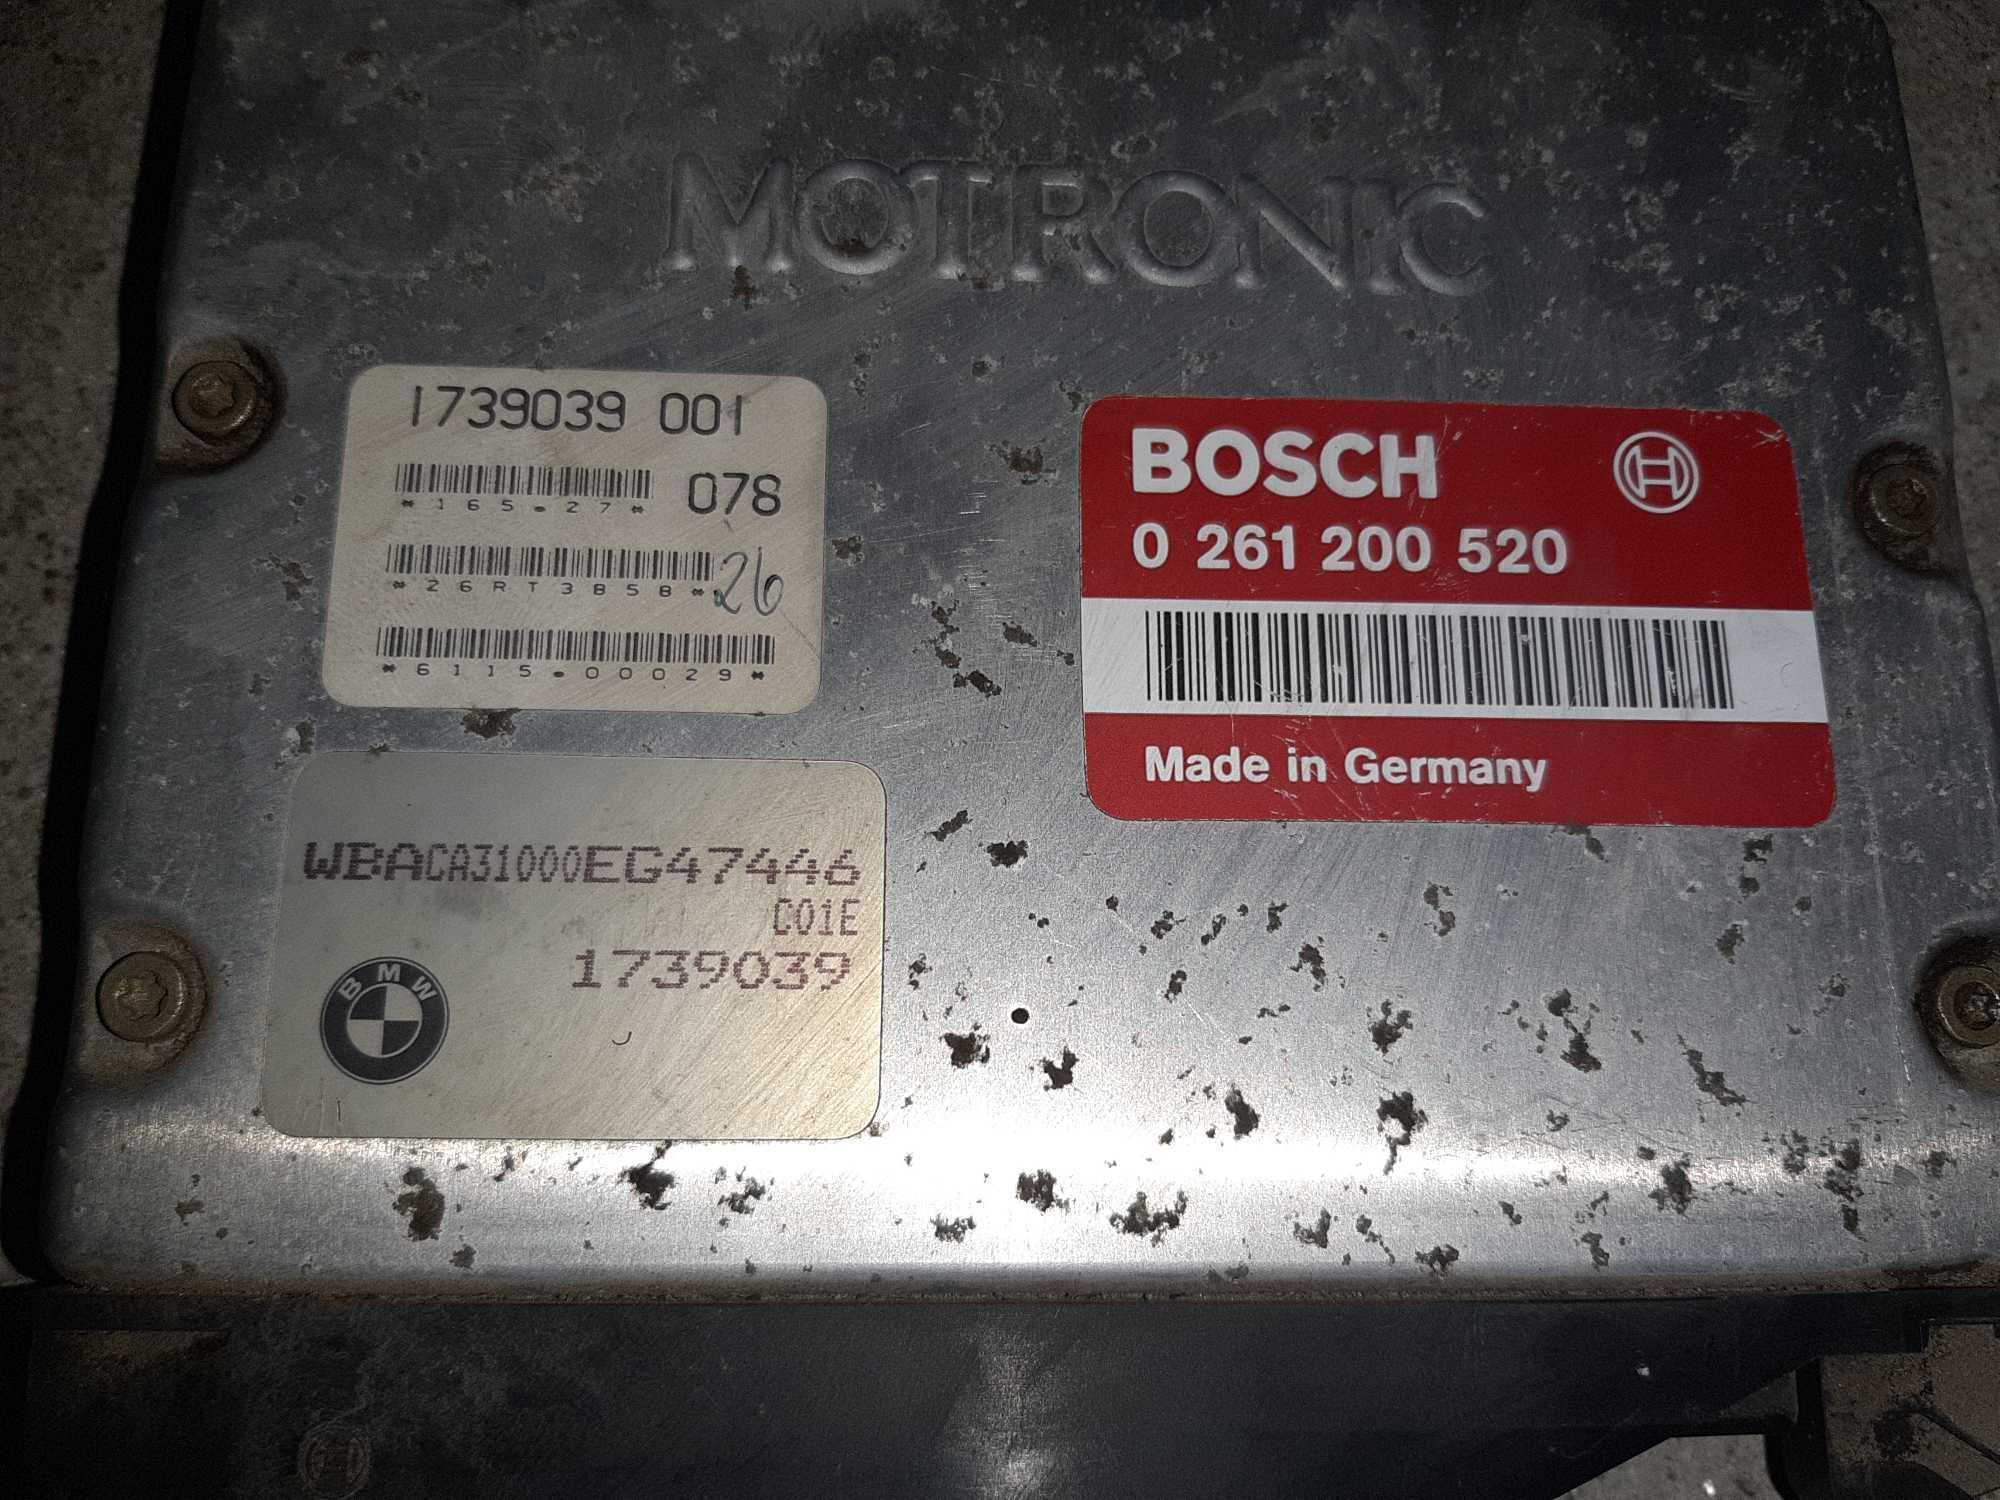 Sterownik silnika BMW Bosch E36 1.8l